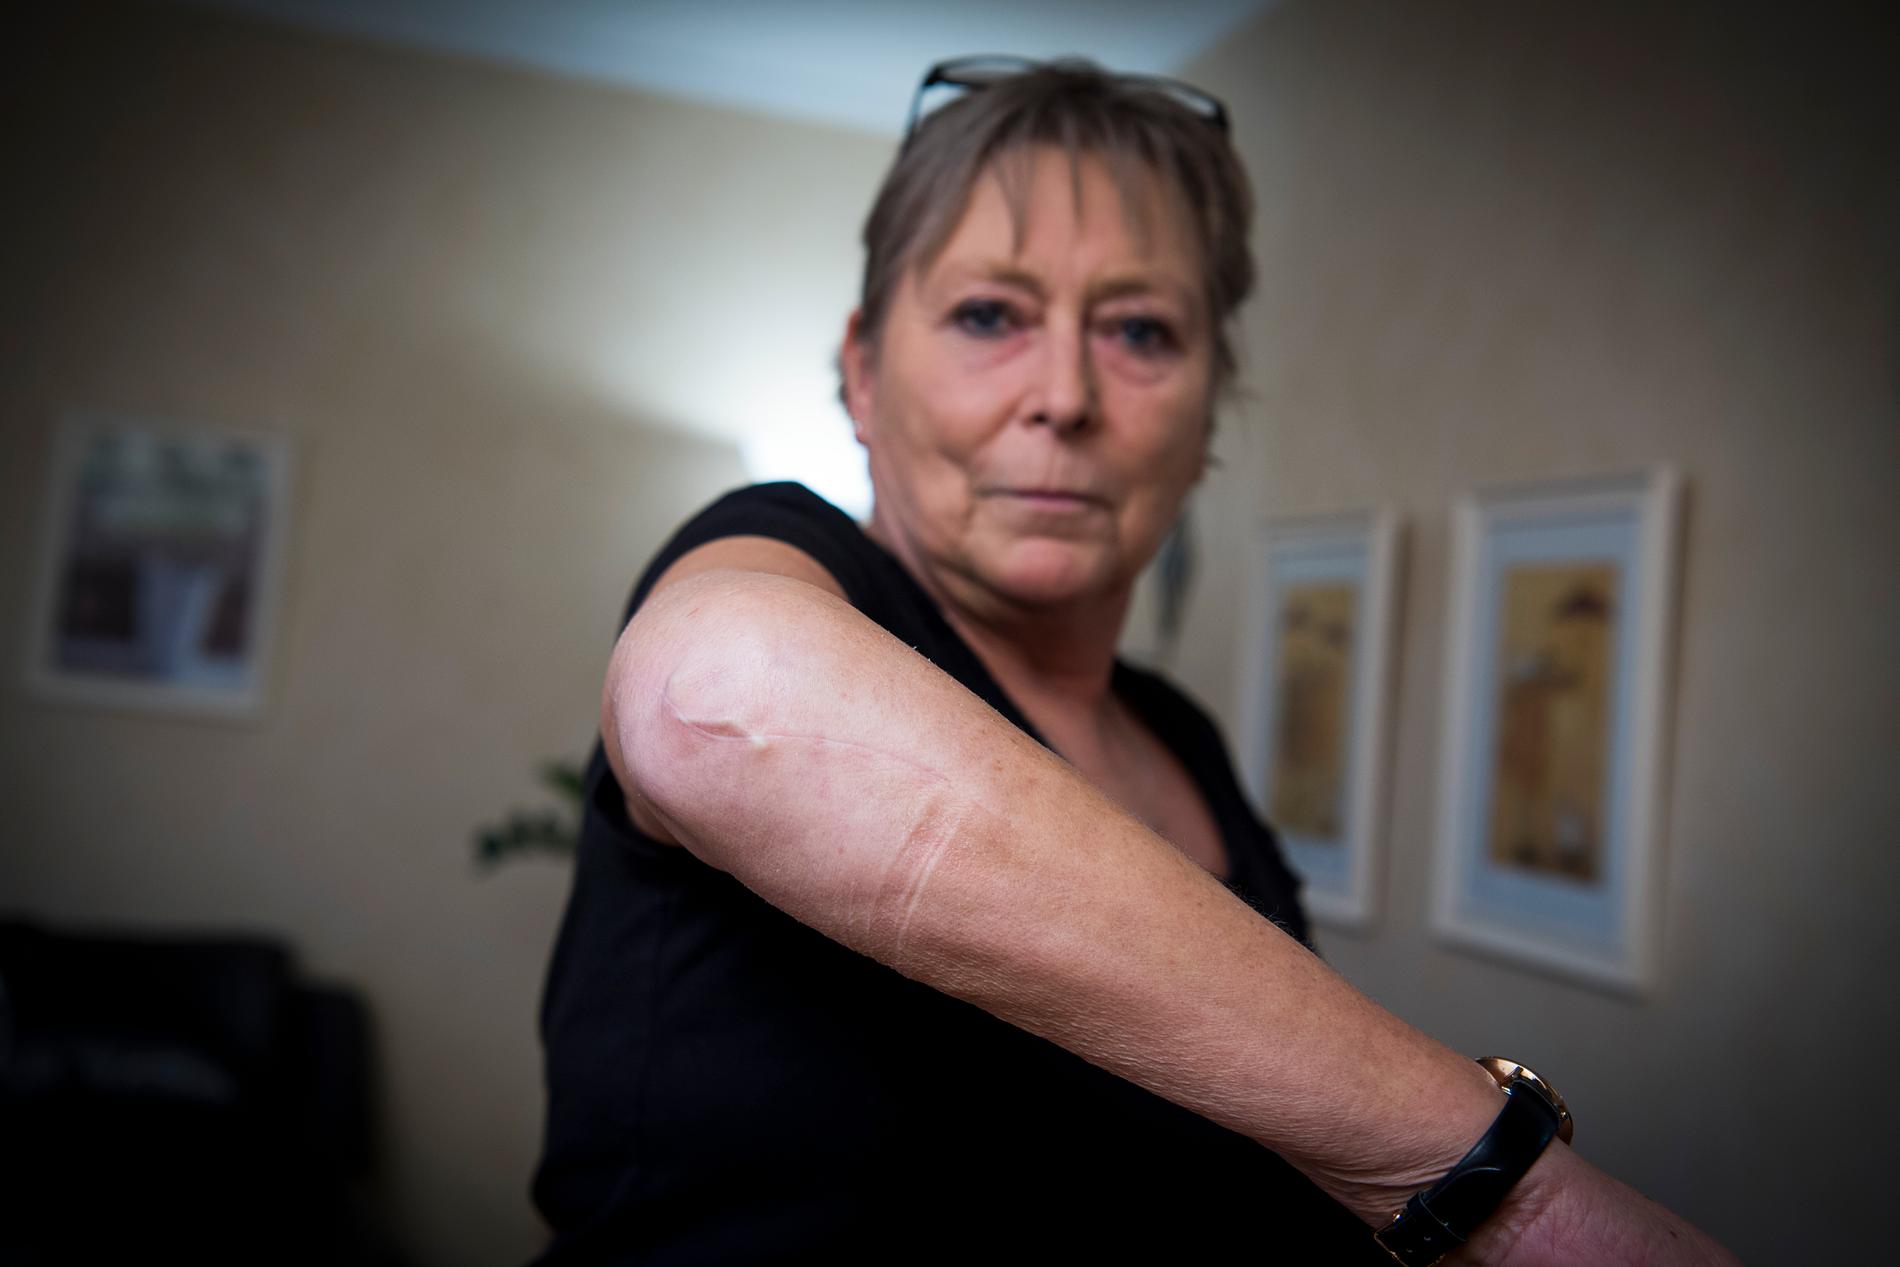 Maritas armbåge blev krossad under terrorattacken och hon har inopererade plattor och skruvar i armen. 